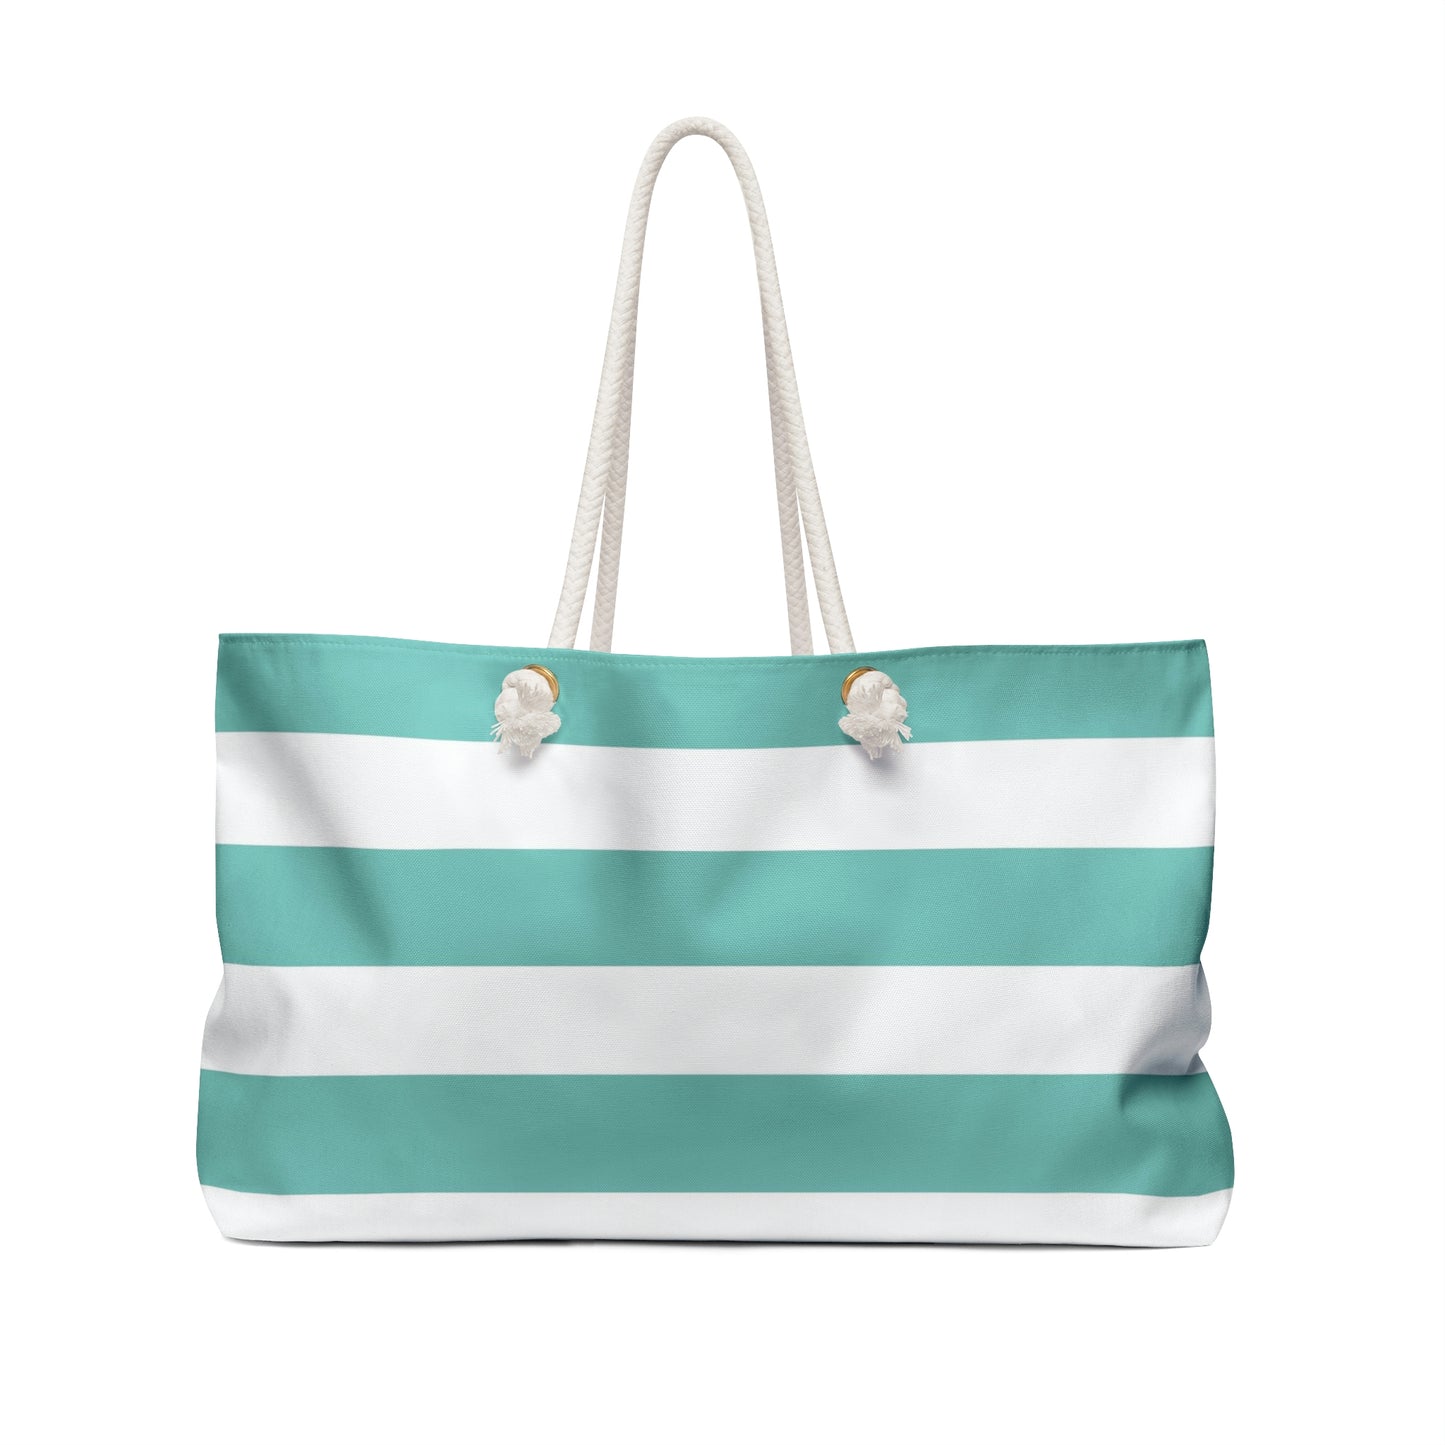 Weekender Tote Bag - Aqua/White Stripes